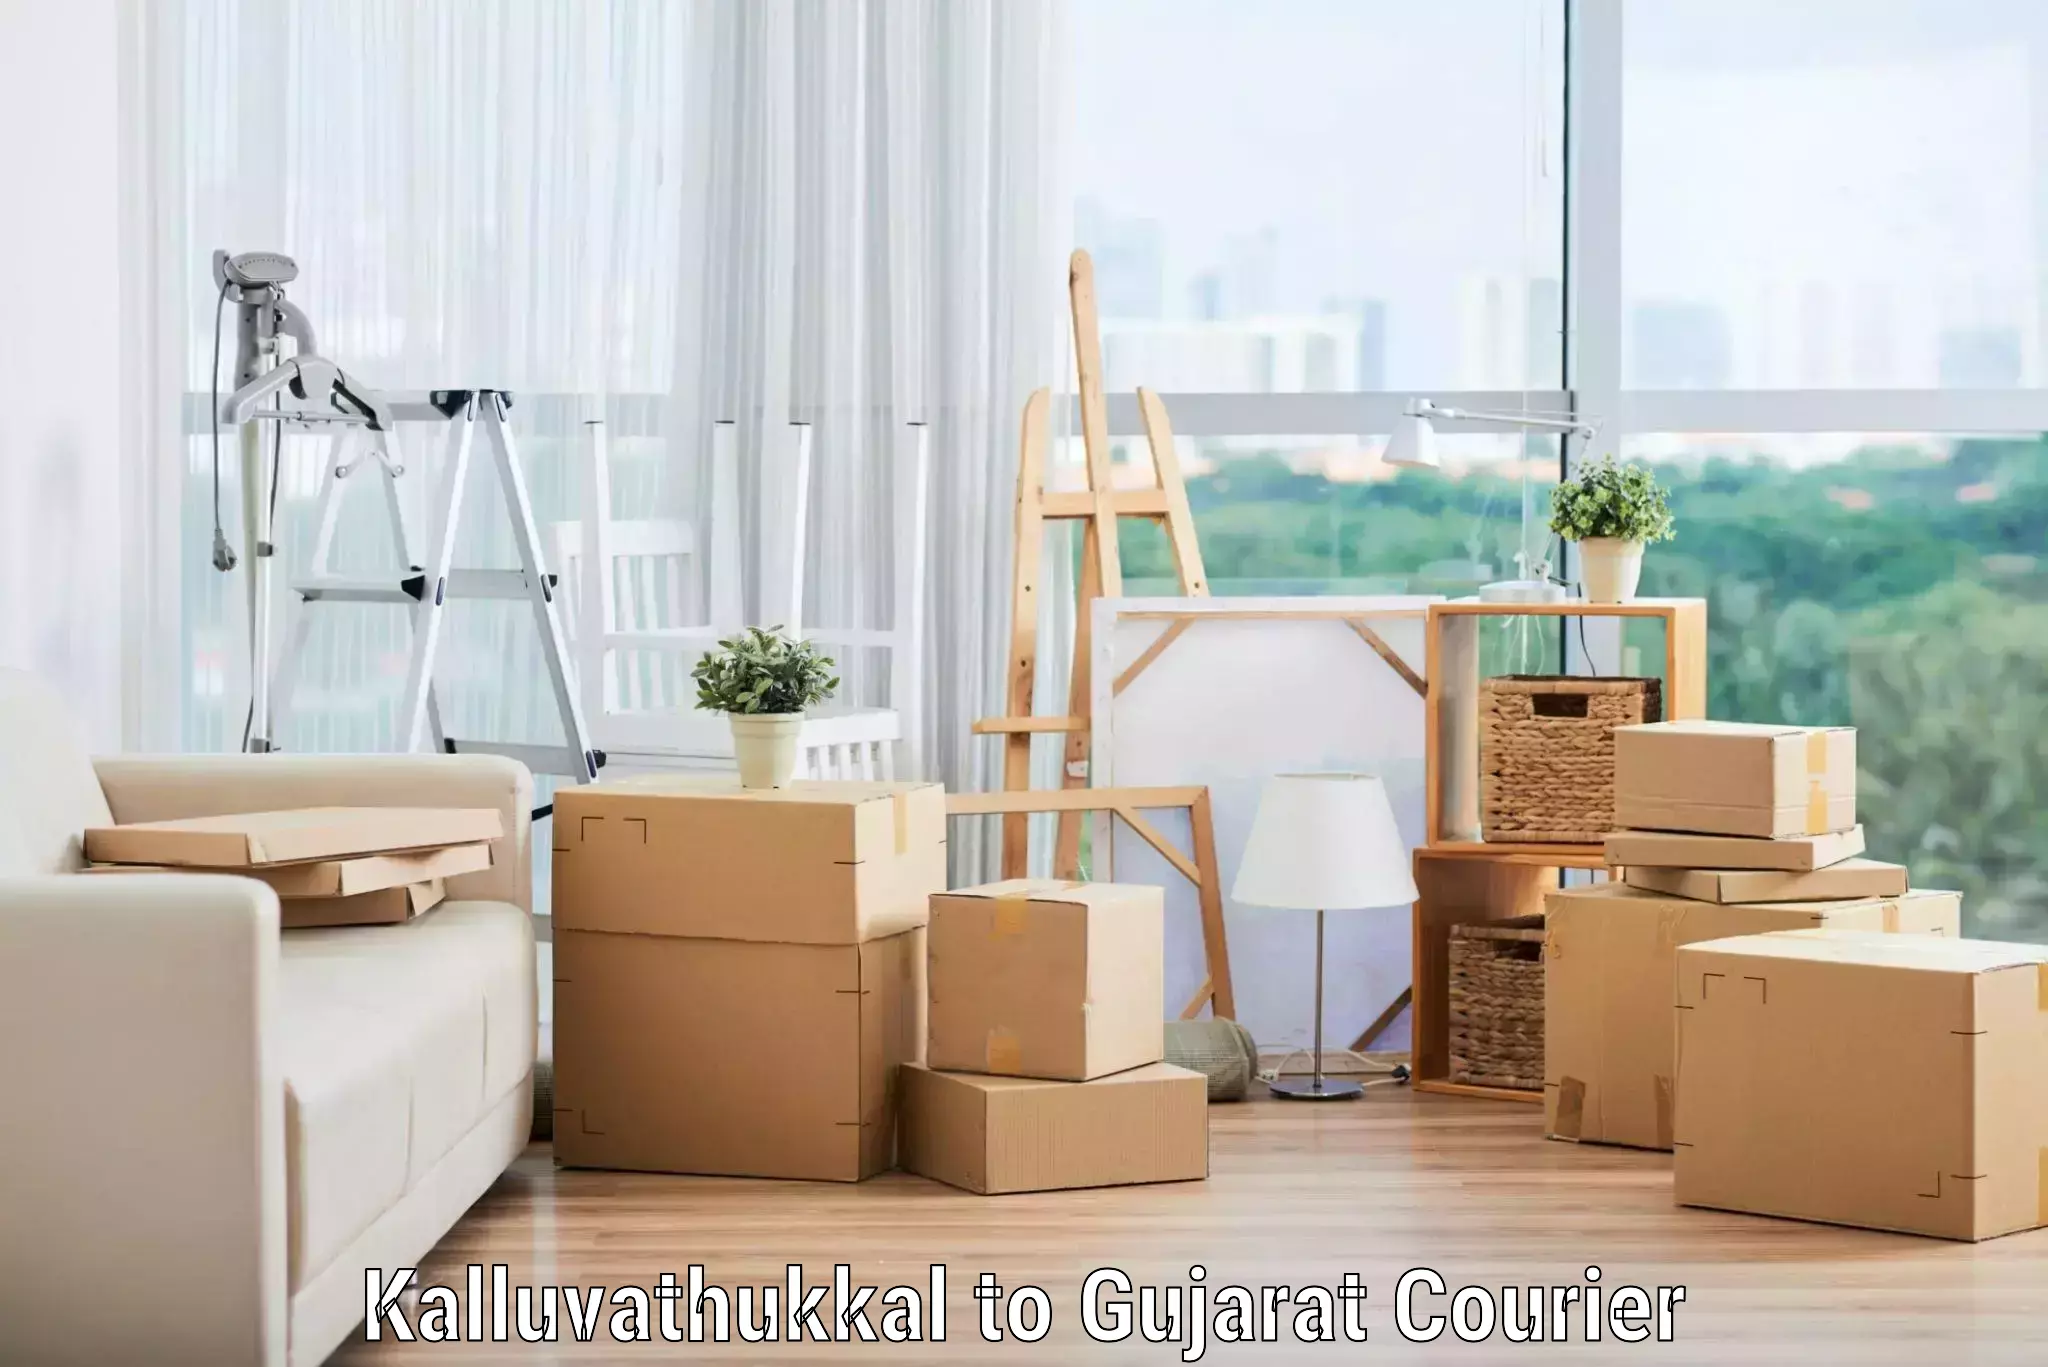 Furniture transport solutions Kalluvathukkal to Gujarat